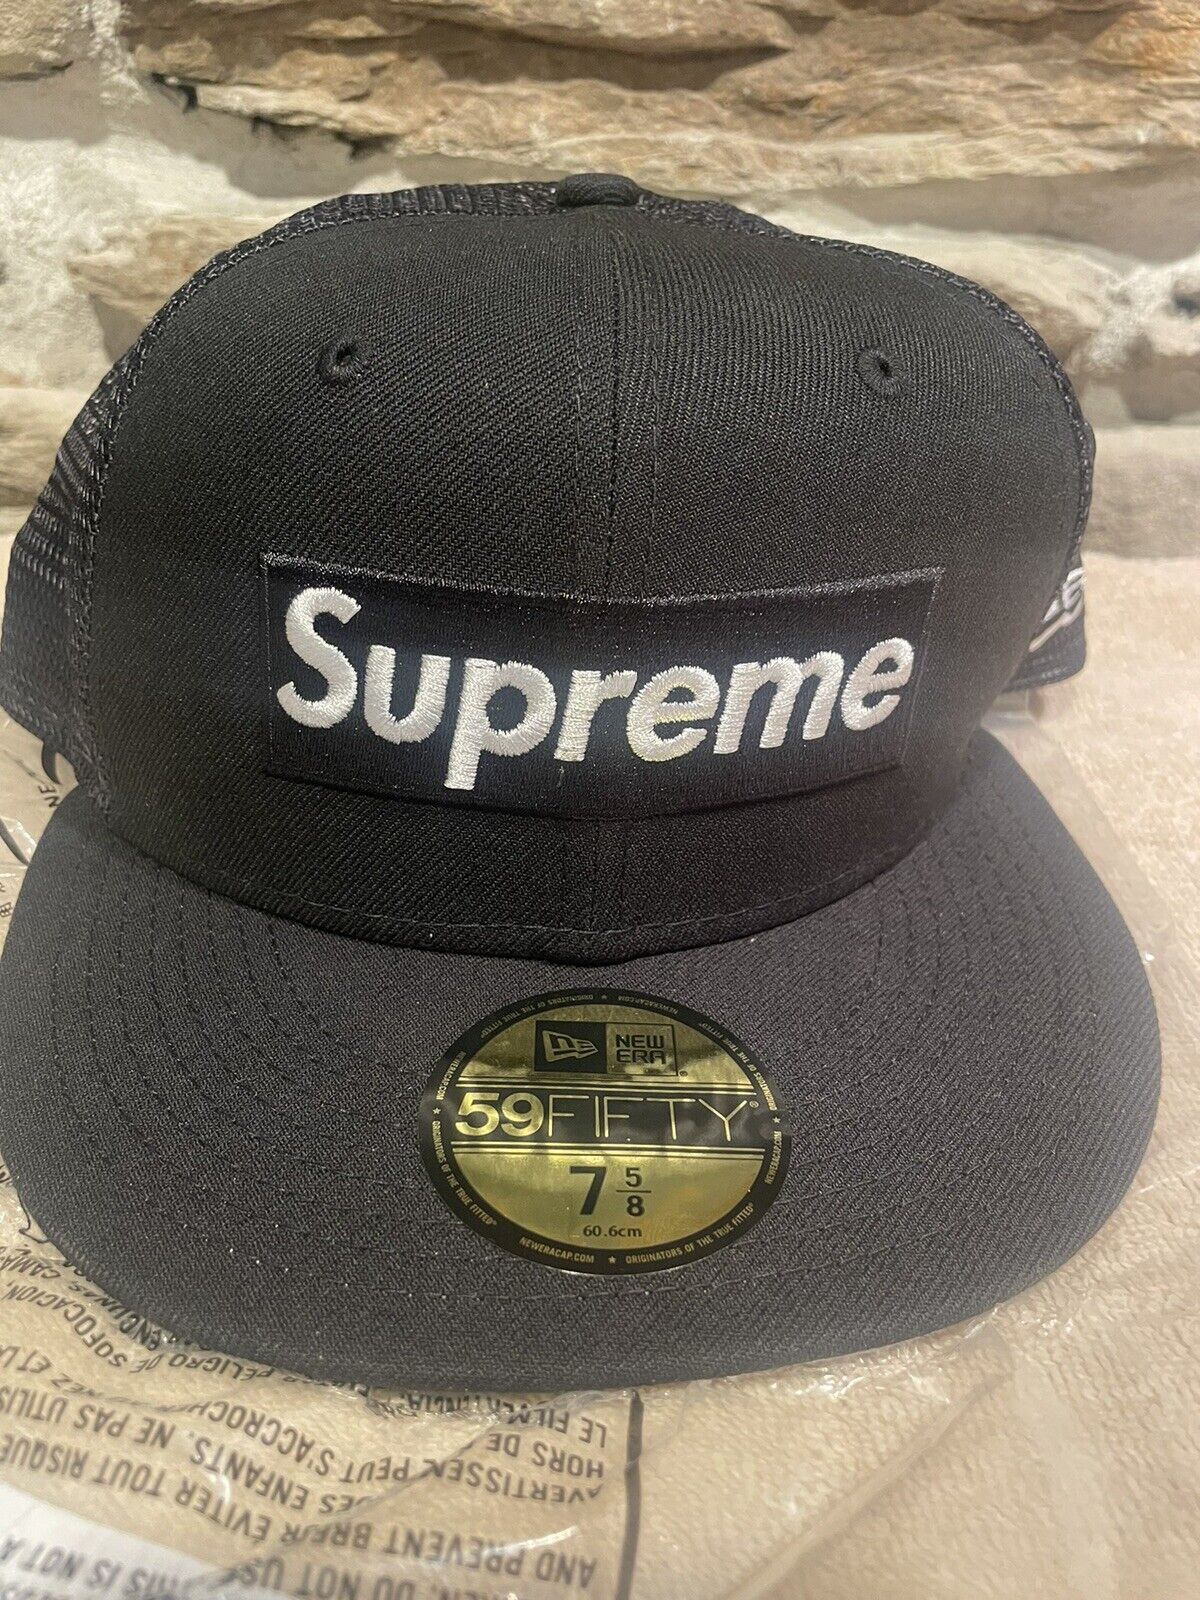 5/8 Supreme Box Logo New Era Black